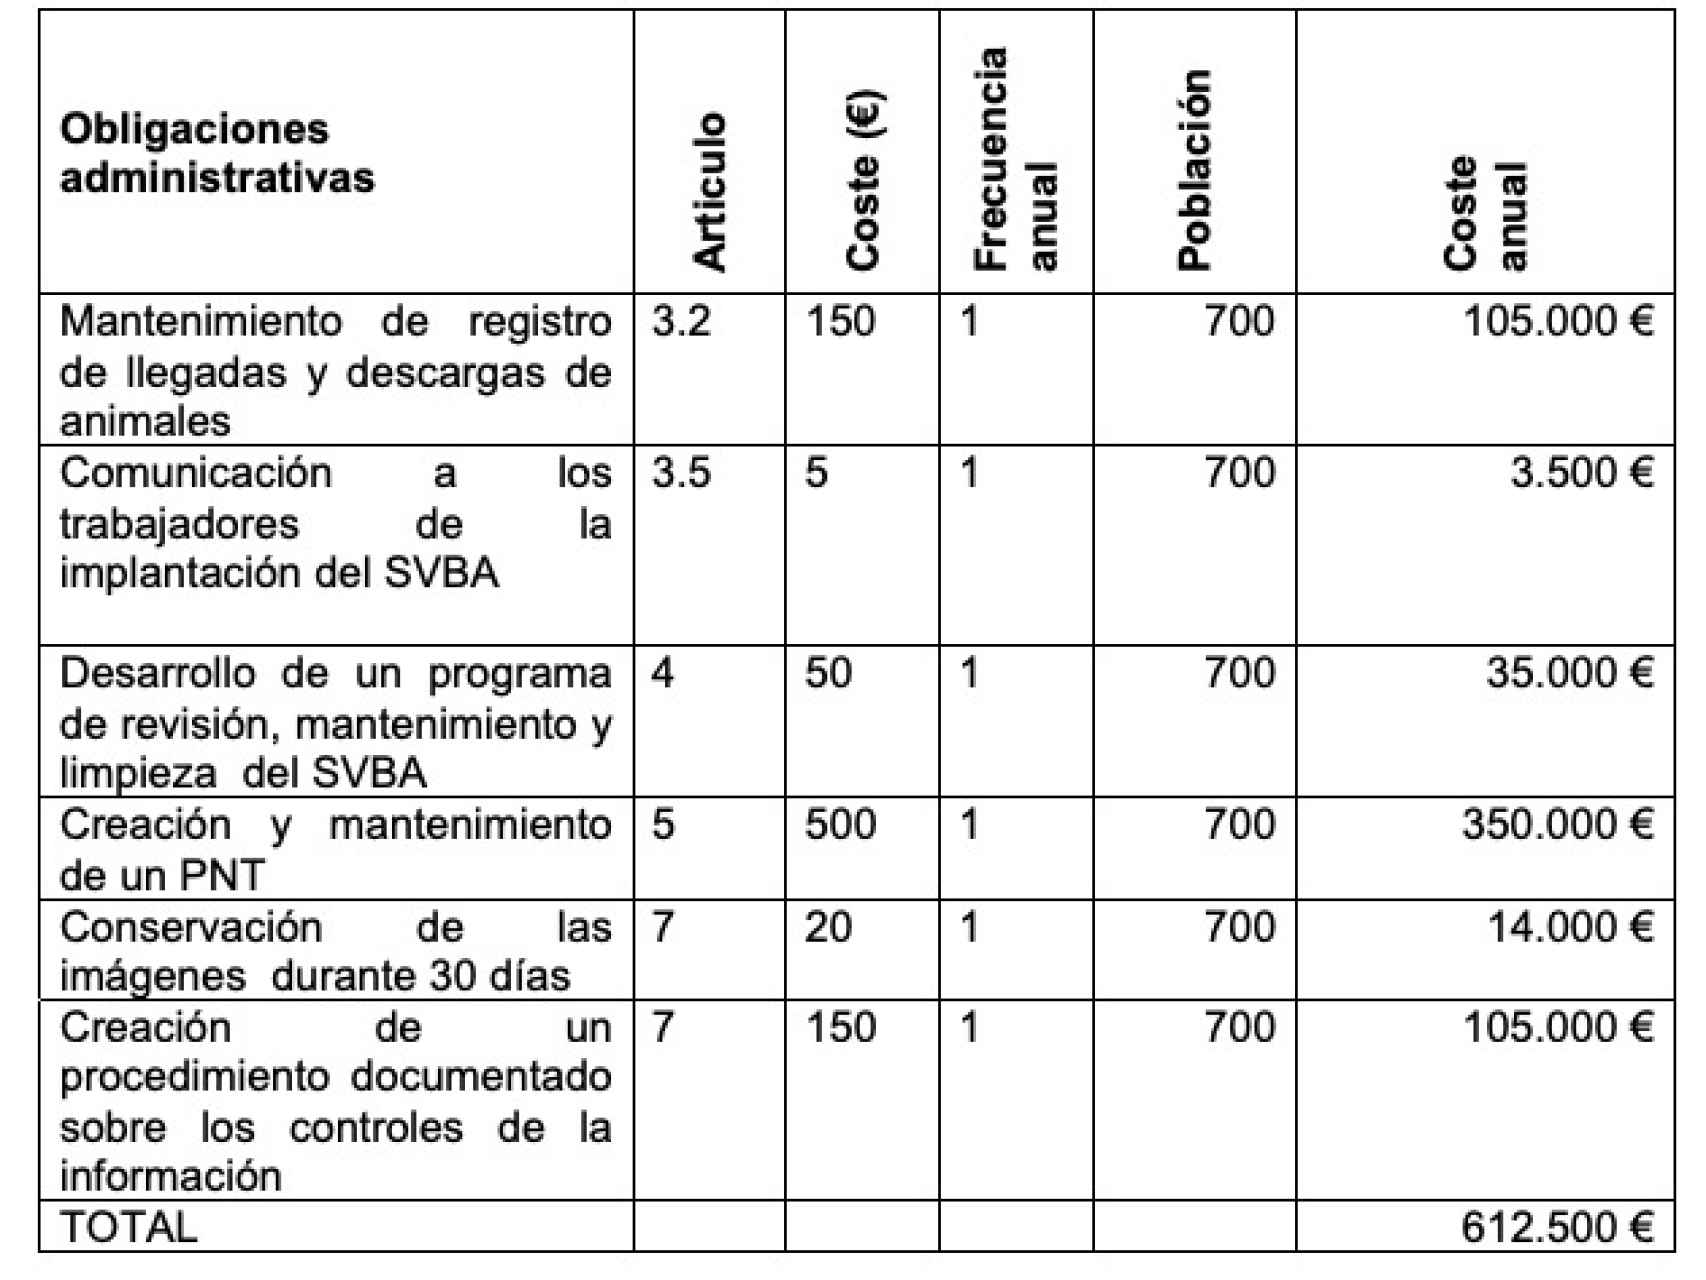 Estimación de las cargas administrativas anuales que deberán pagar todos los mataderos de España.